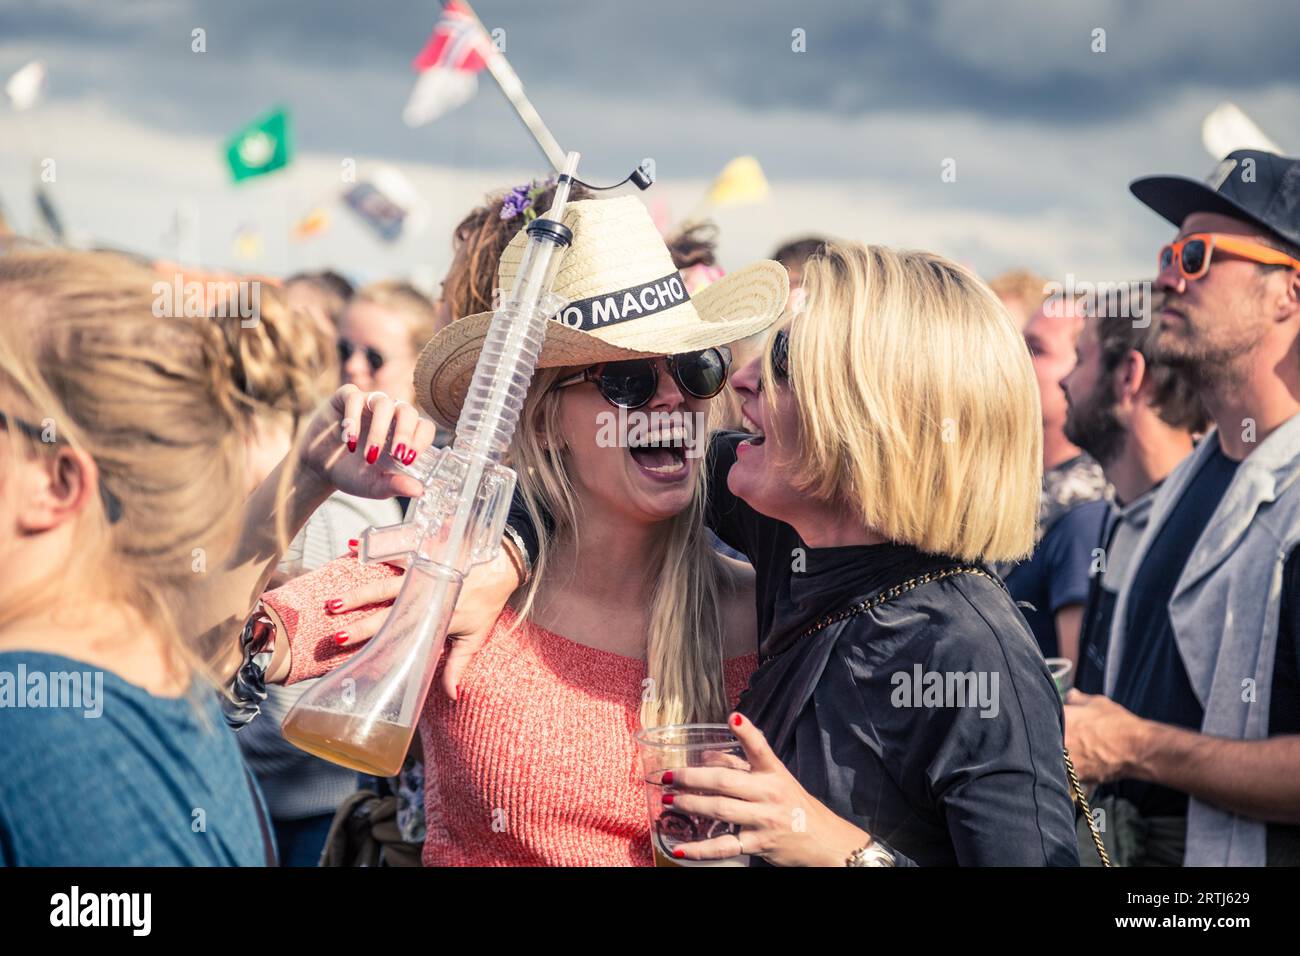 Roskilde, Danemark, 29 juin 2016 : deux filles font la fête et profitent d'un concert au Festival de Roskilde Banque D'Images